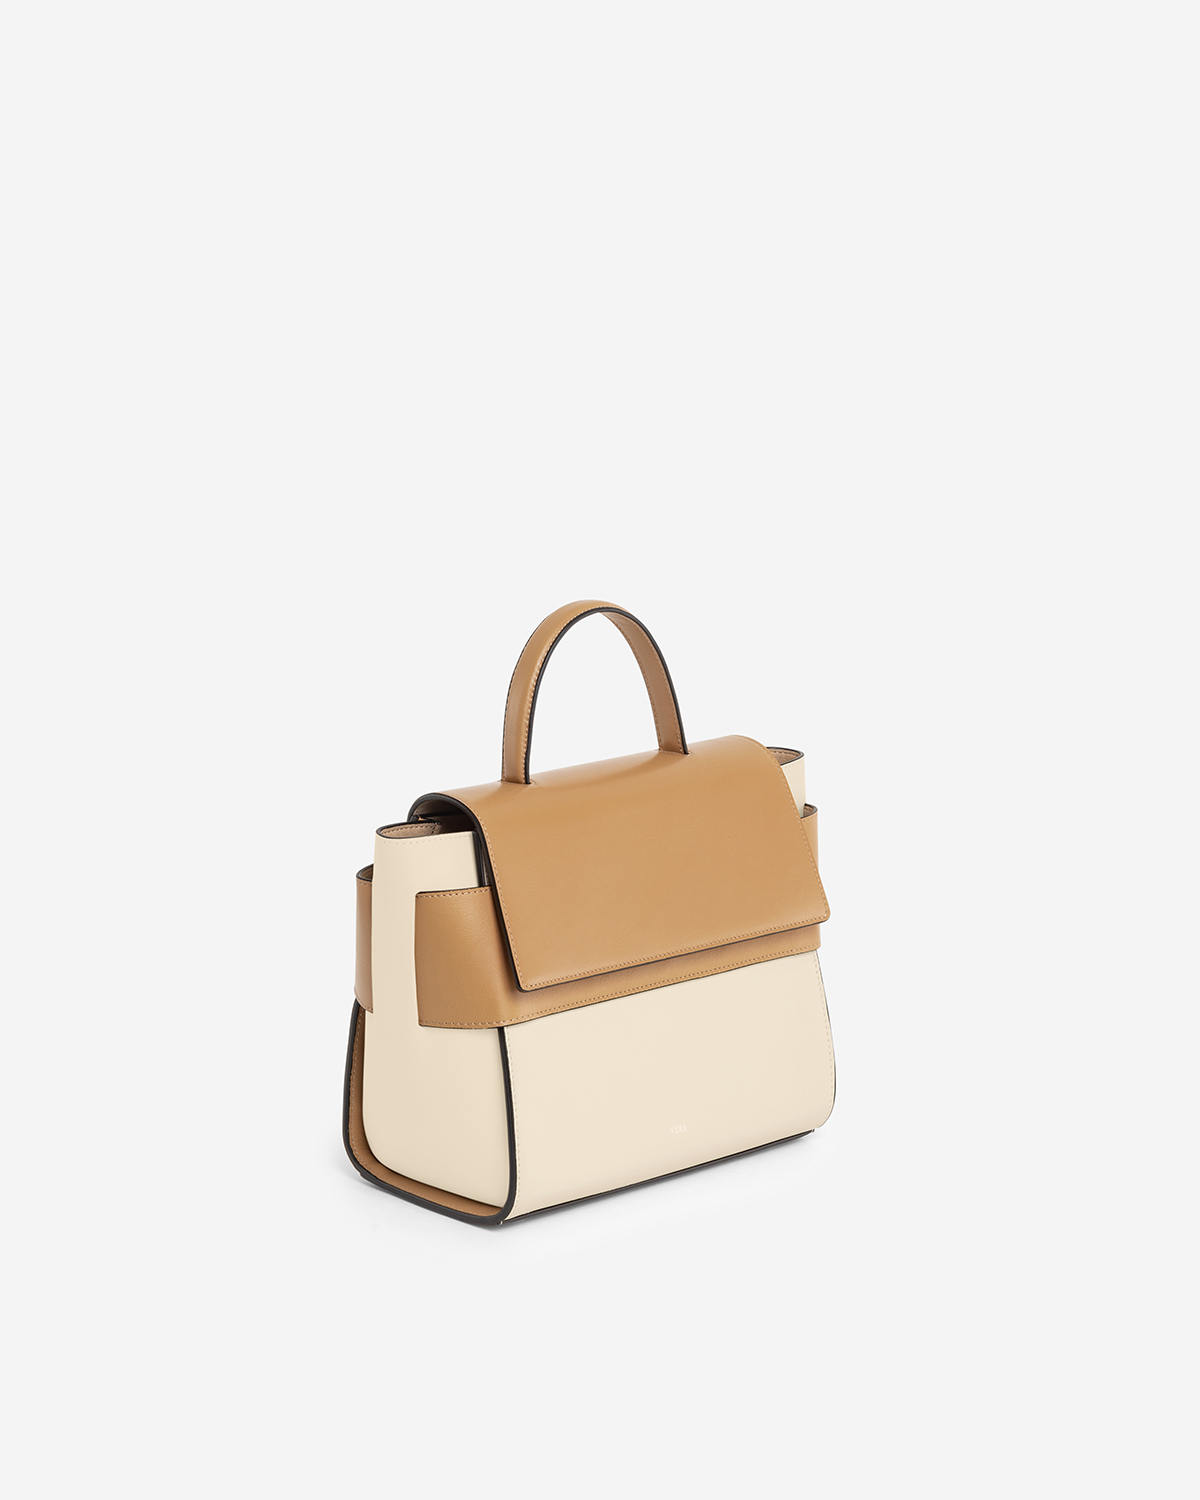 VERA Margo Leather Handbag, Size 24 in Beige Butterscotch